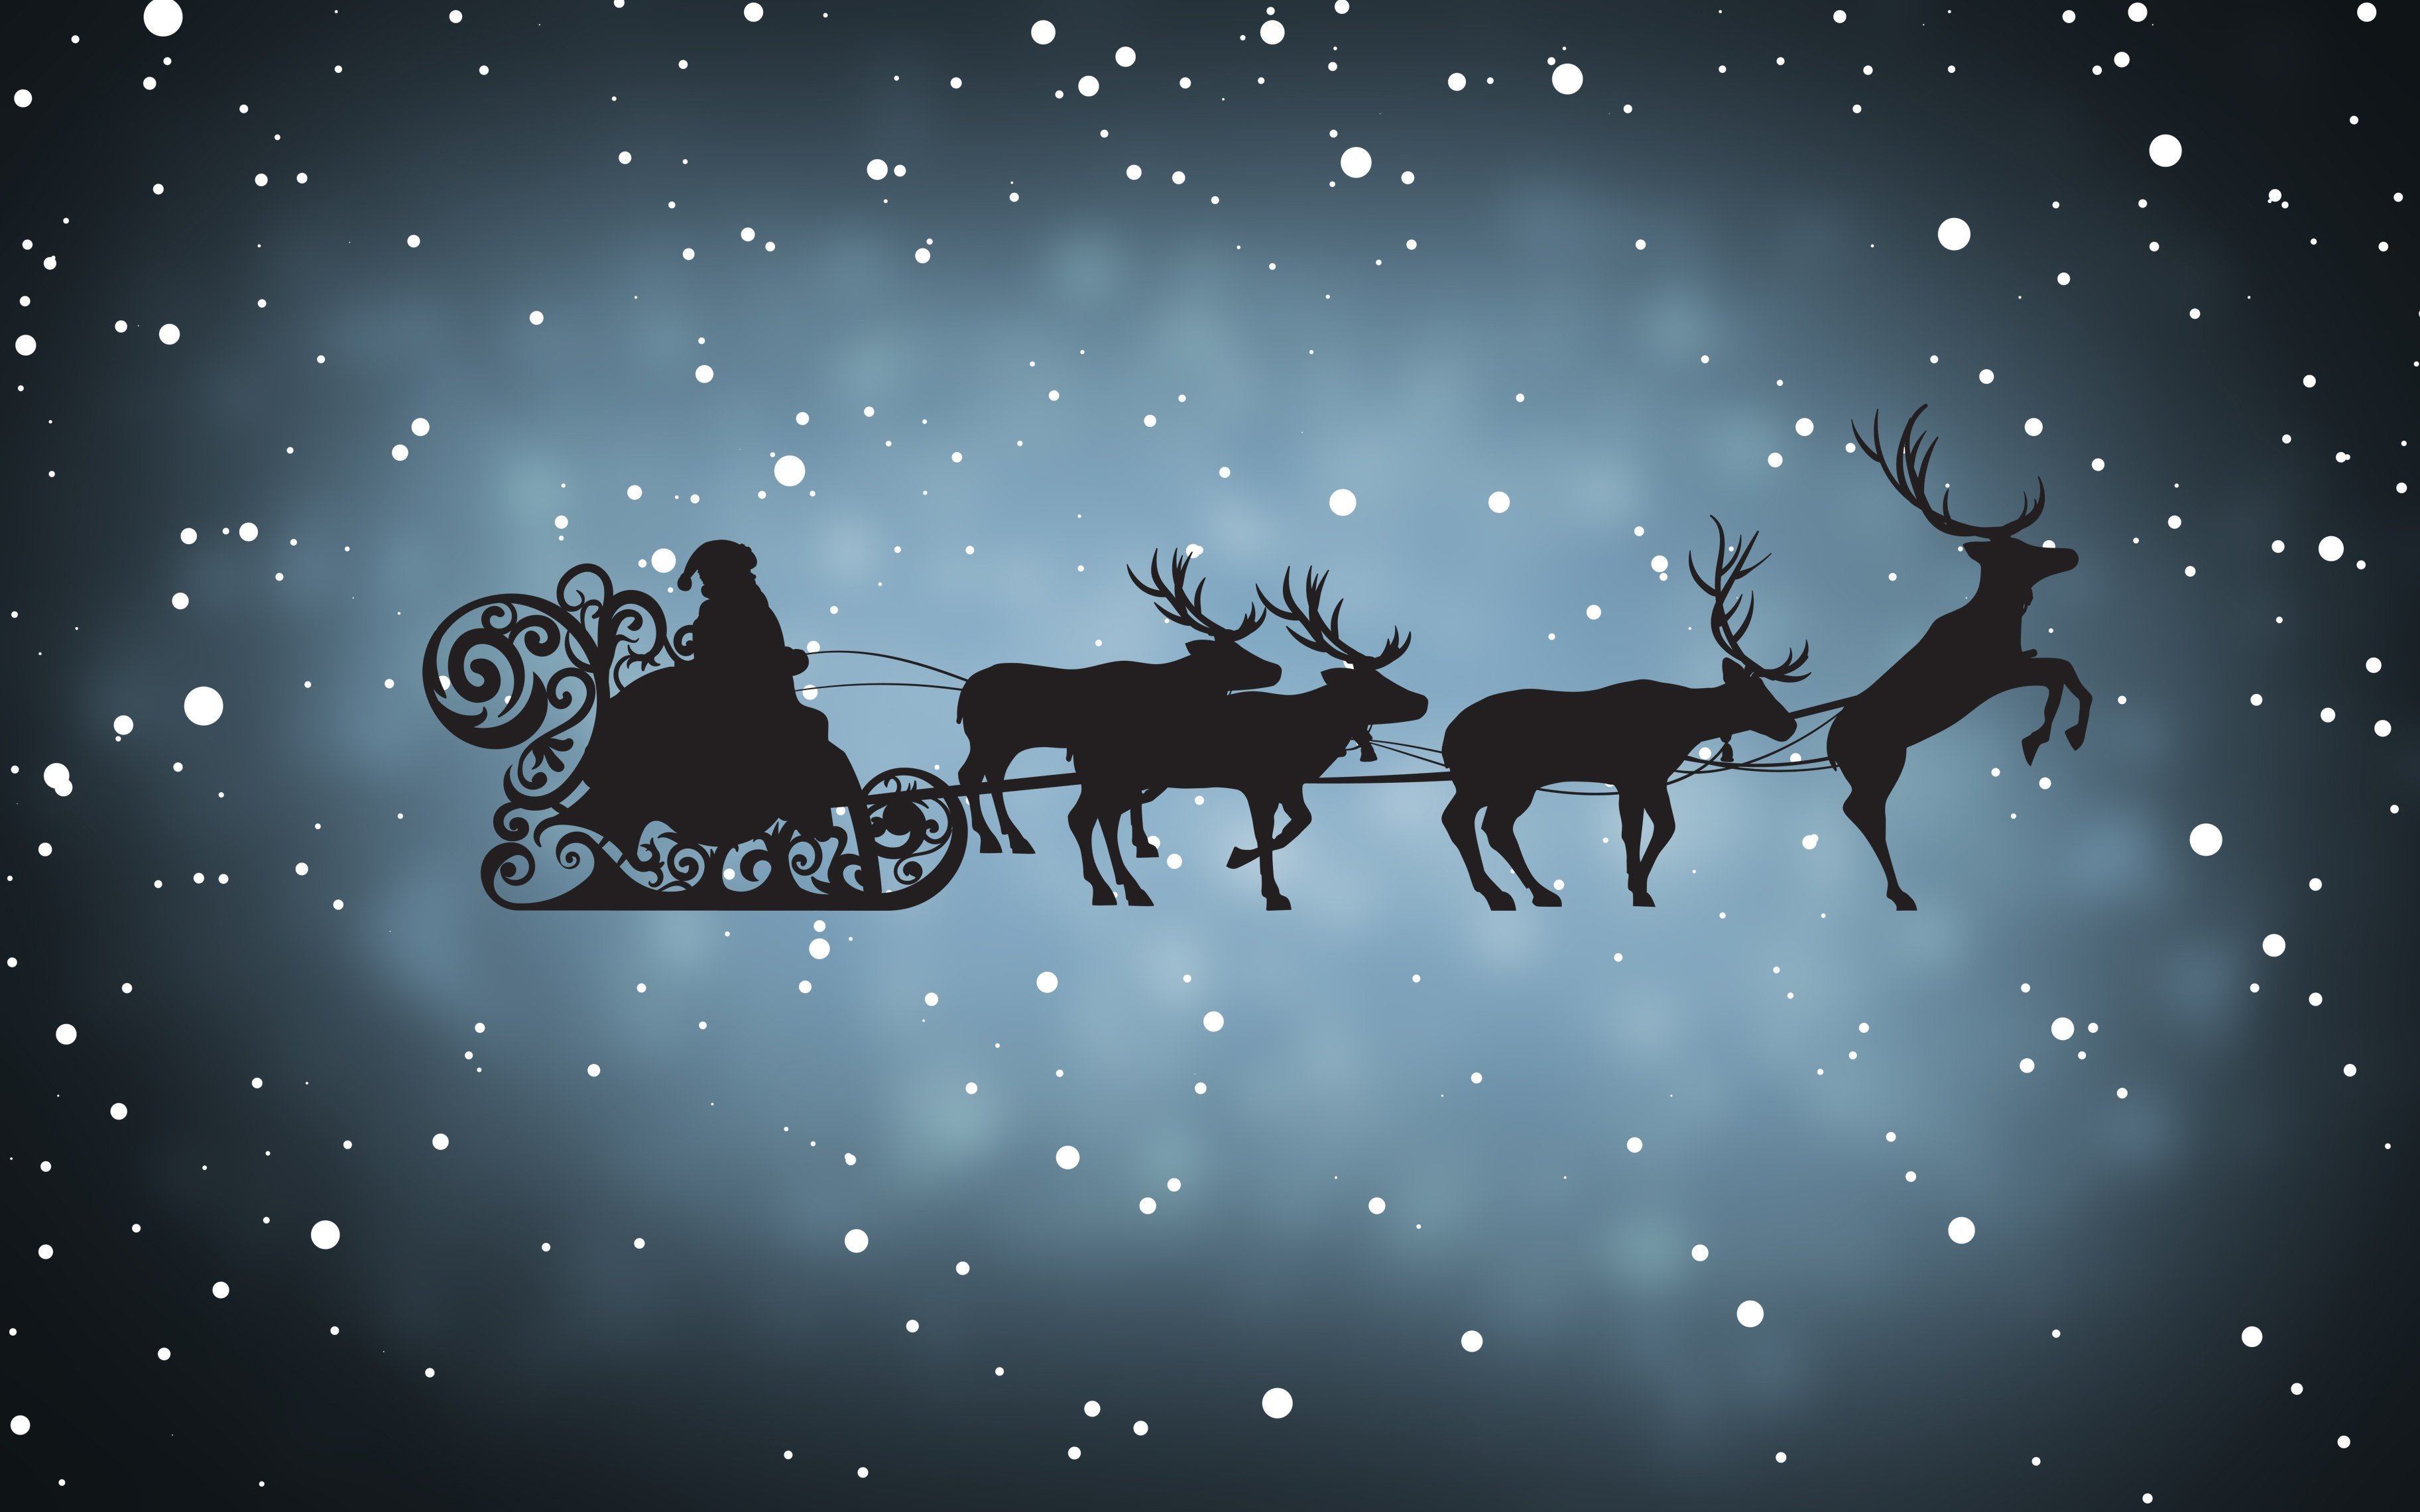 Дед Мороз на санях, запряженных оленями